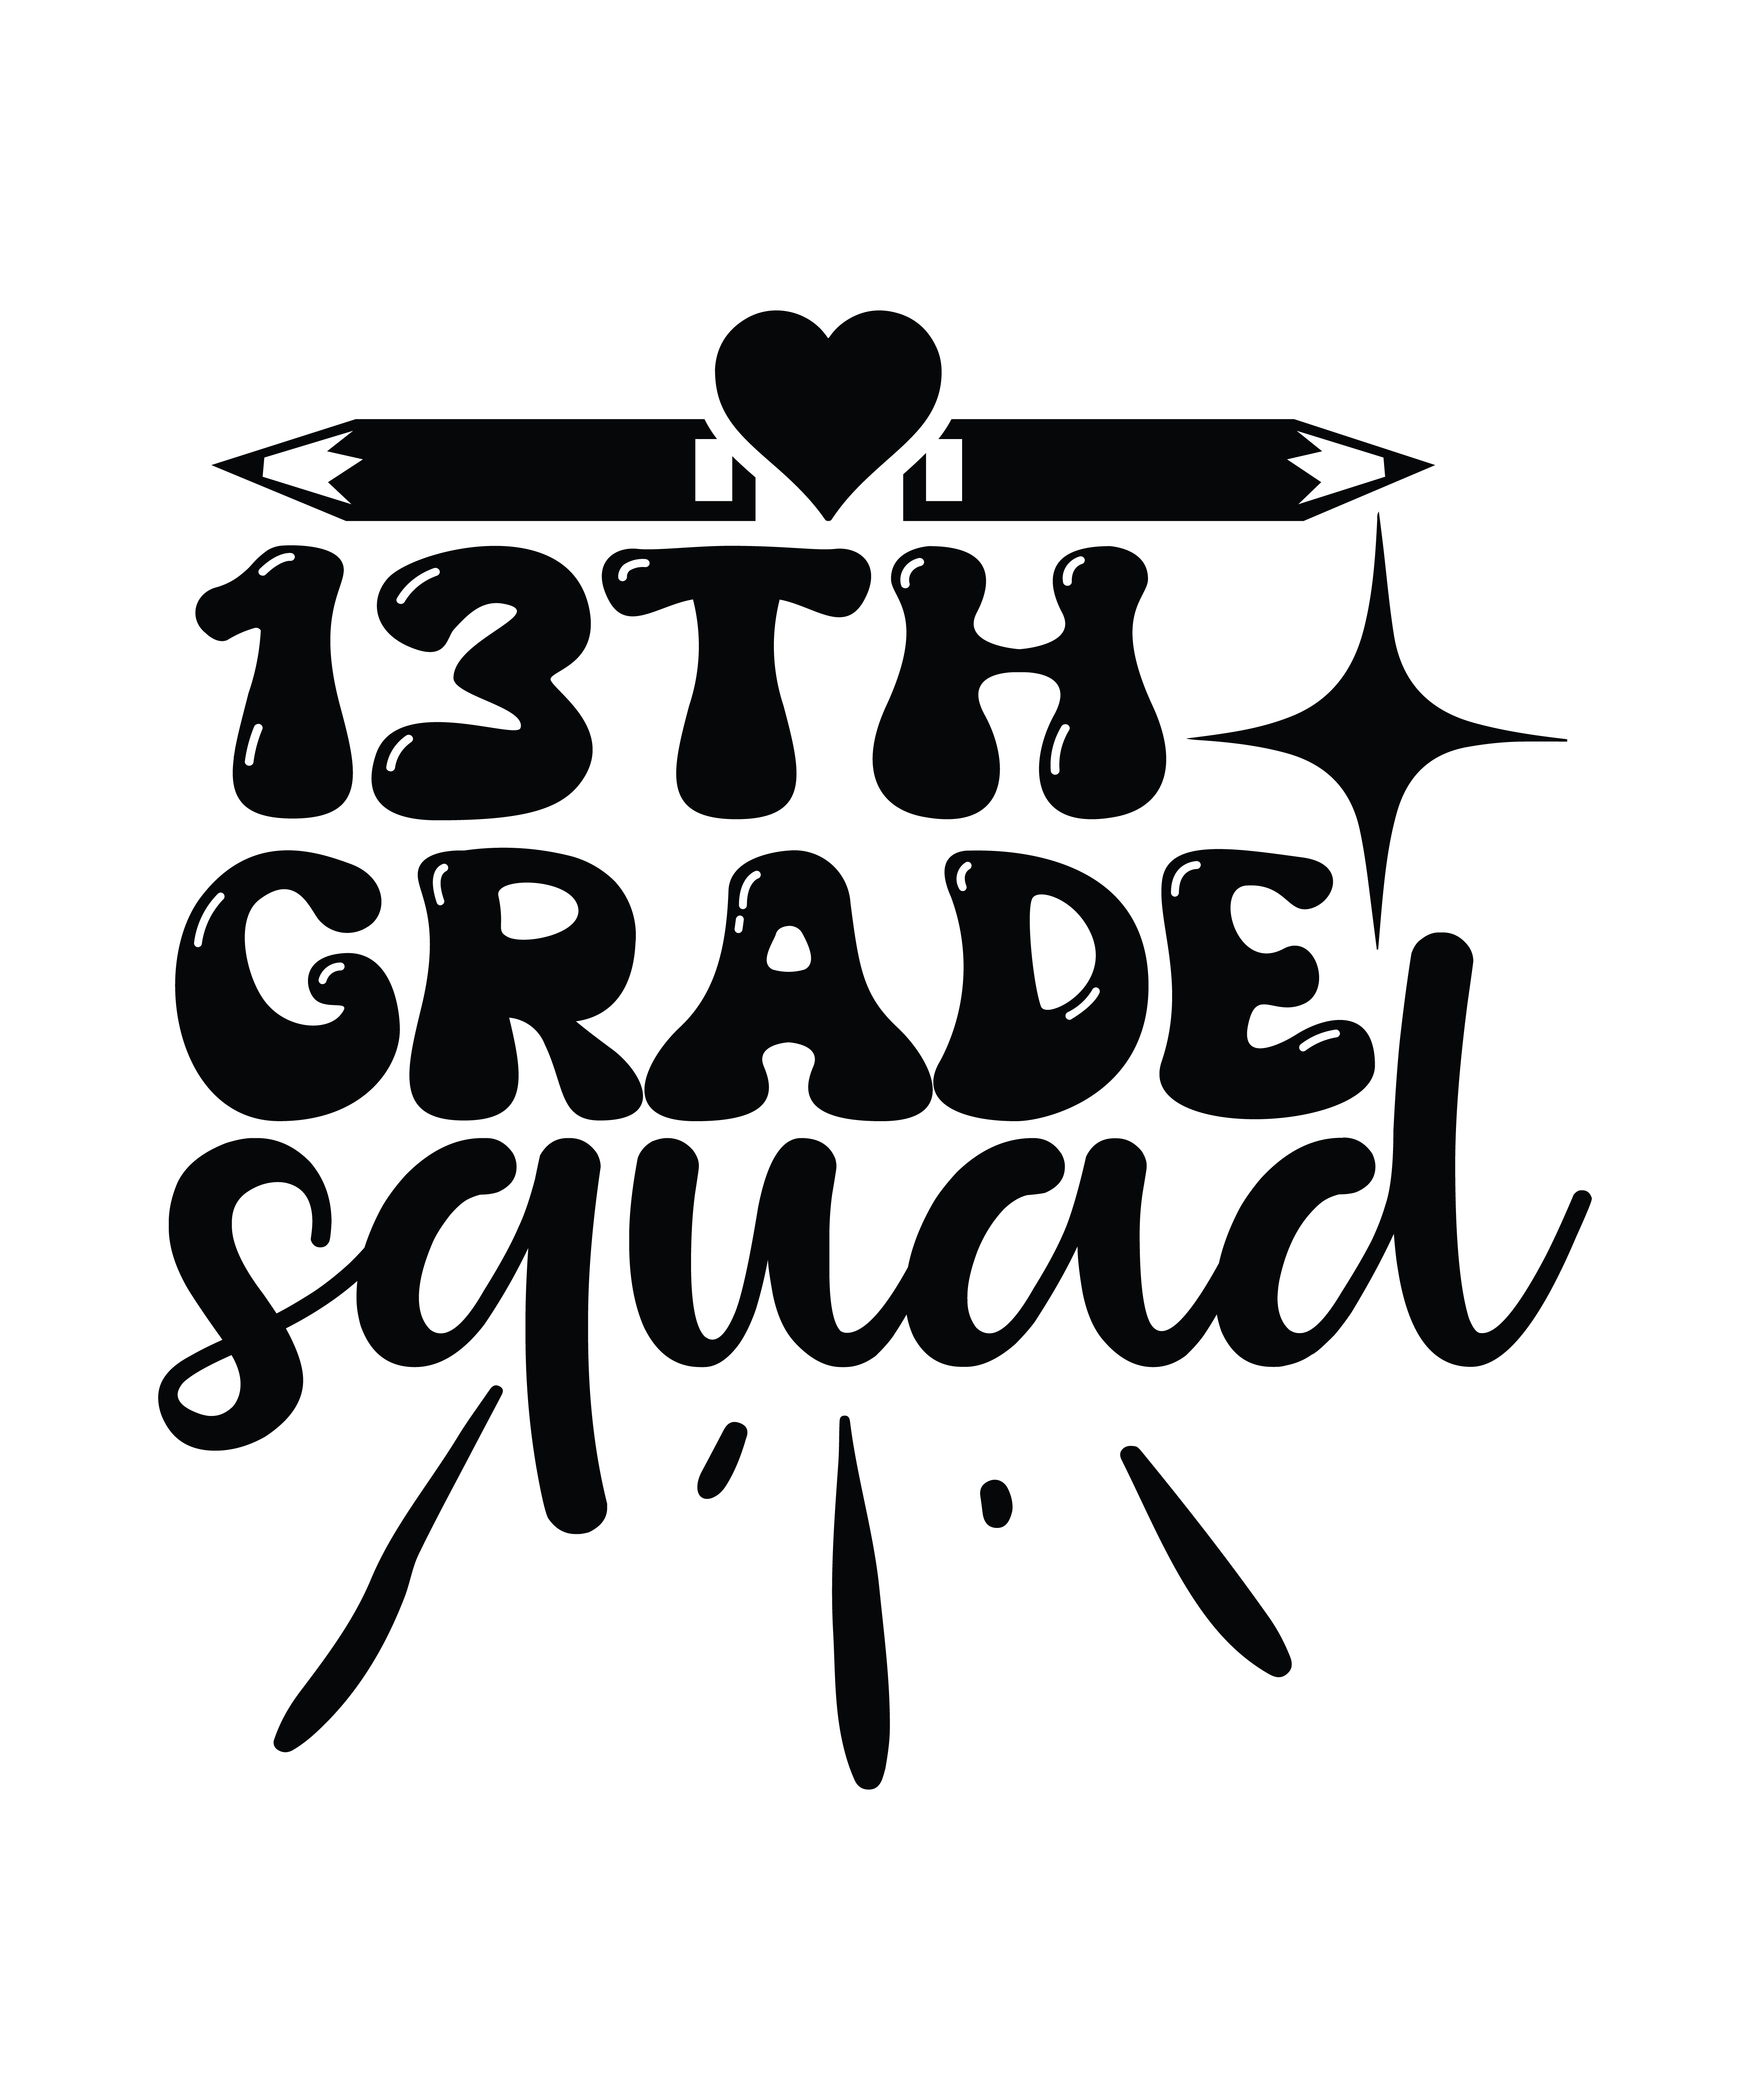 13th grade squad 01 503